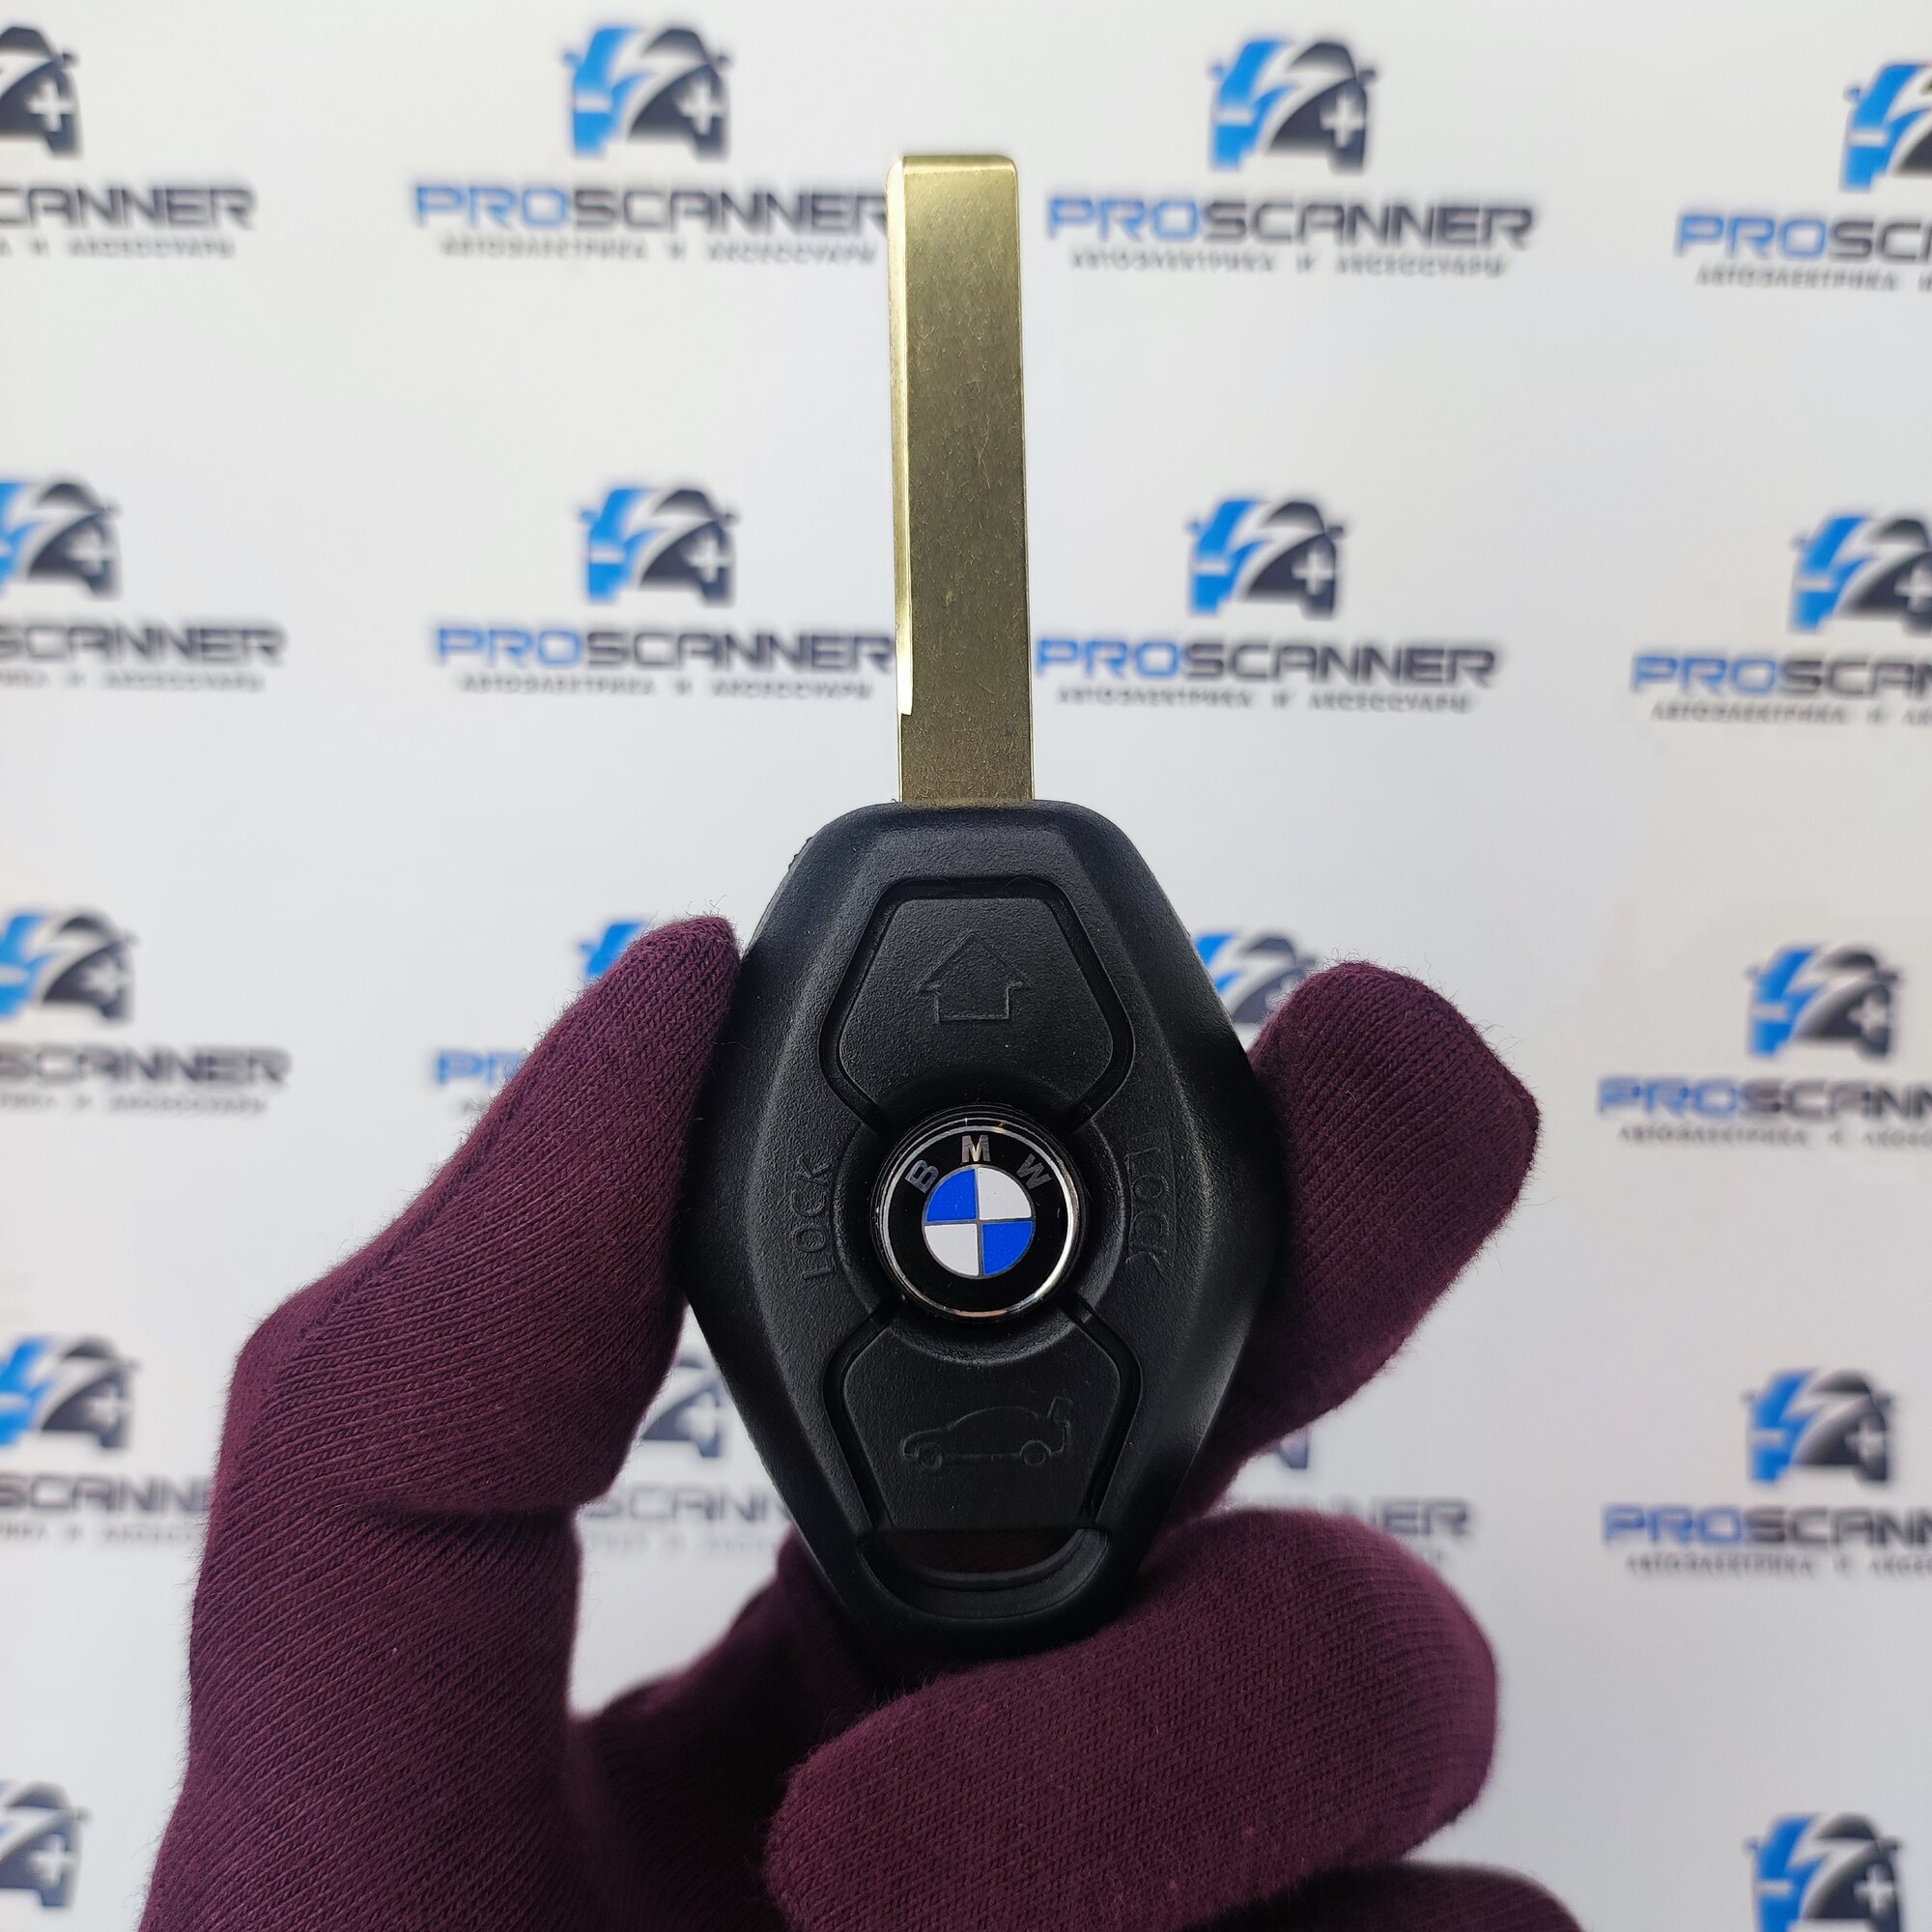 Корпус ключа зажигания для БМВ BMW E46 E39 E38 X3 e83 X5 e53 - 1 штука (3х кнопочный ключ, лезвие HU92)